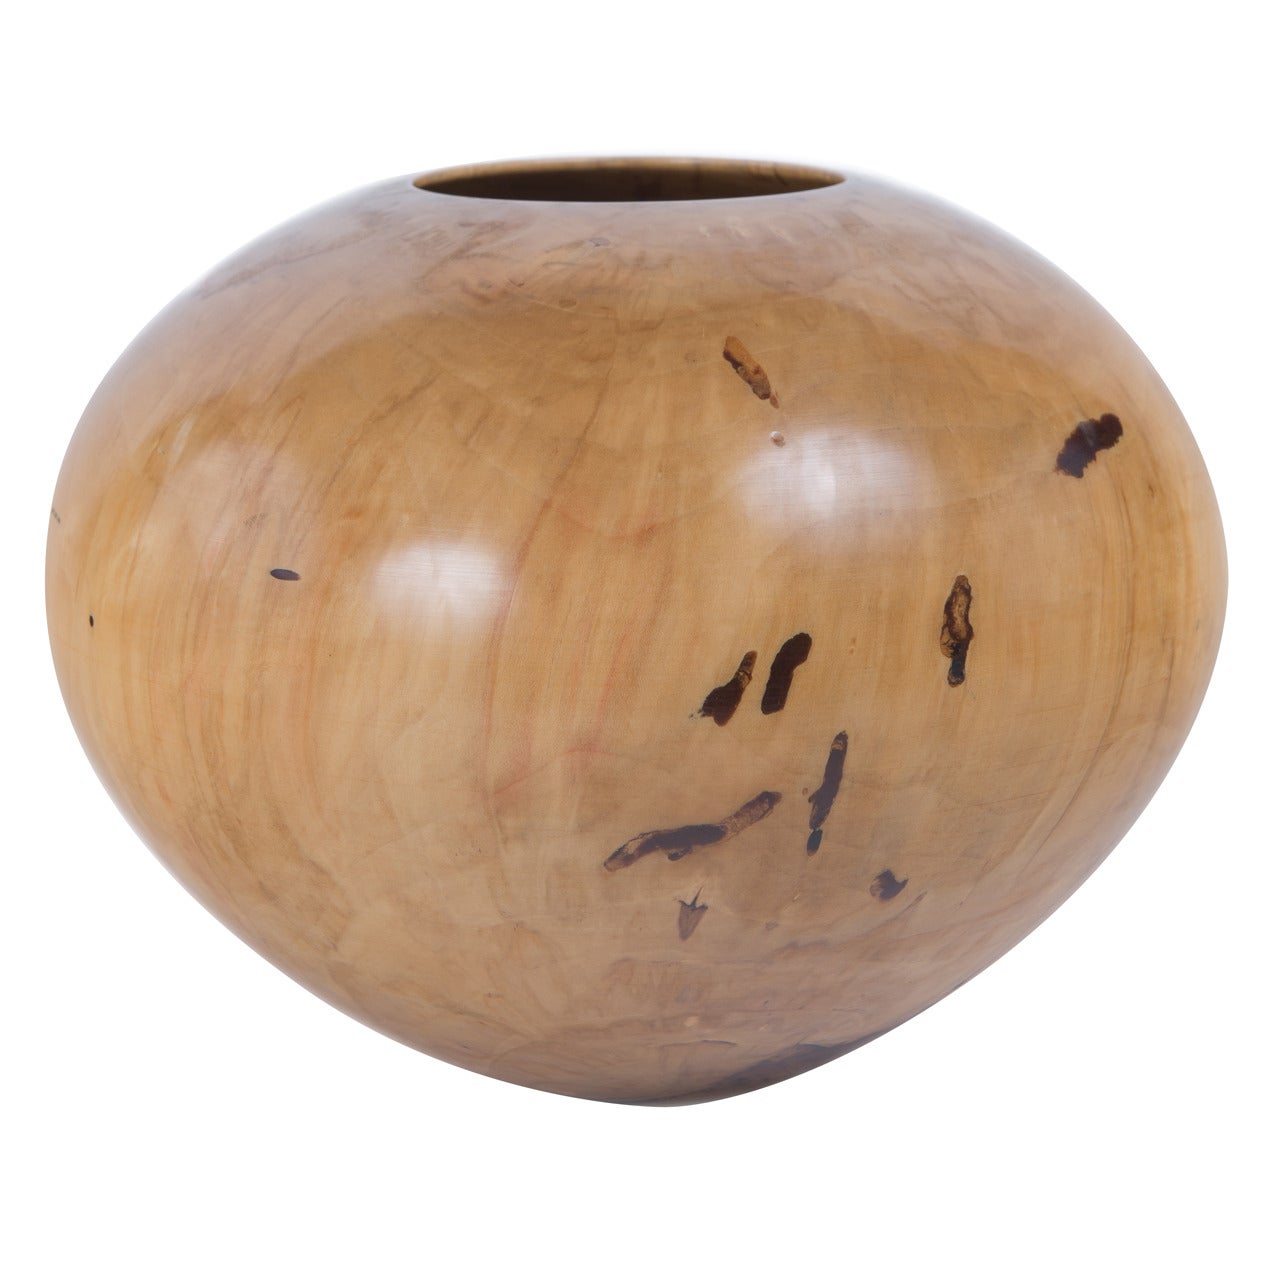 Ash Leaf Maple Turned Wood Vase by Phillip Moulthrop